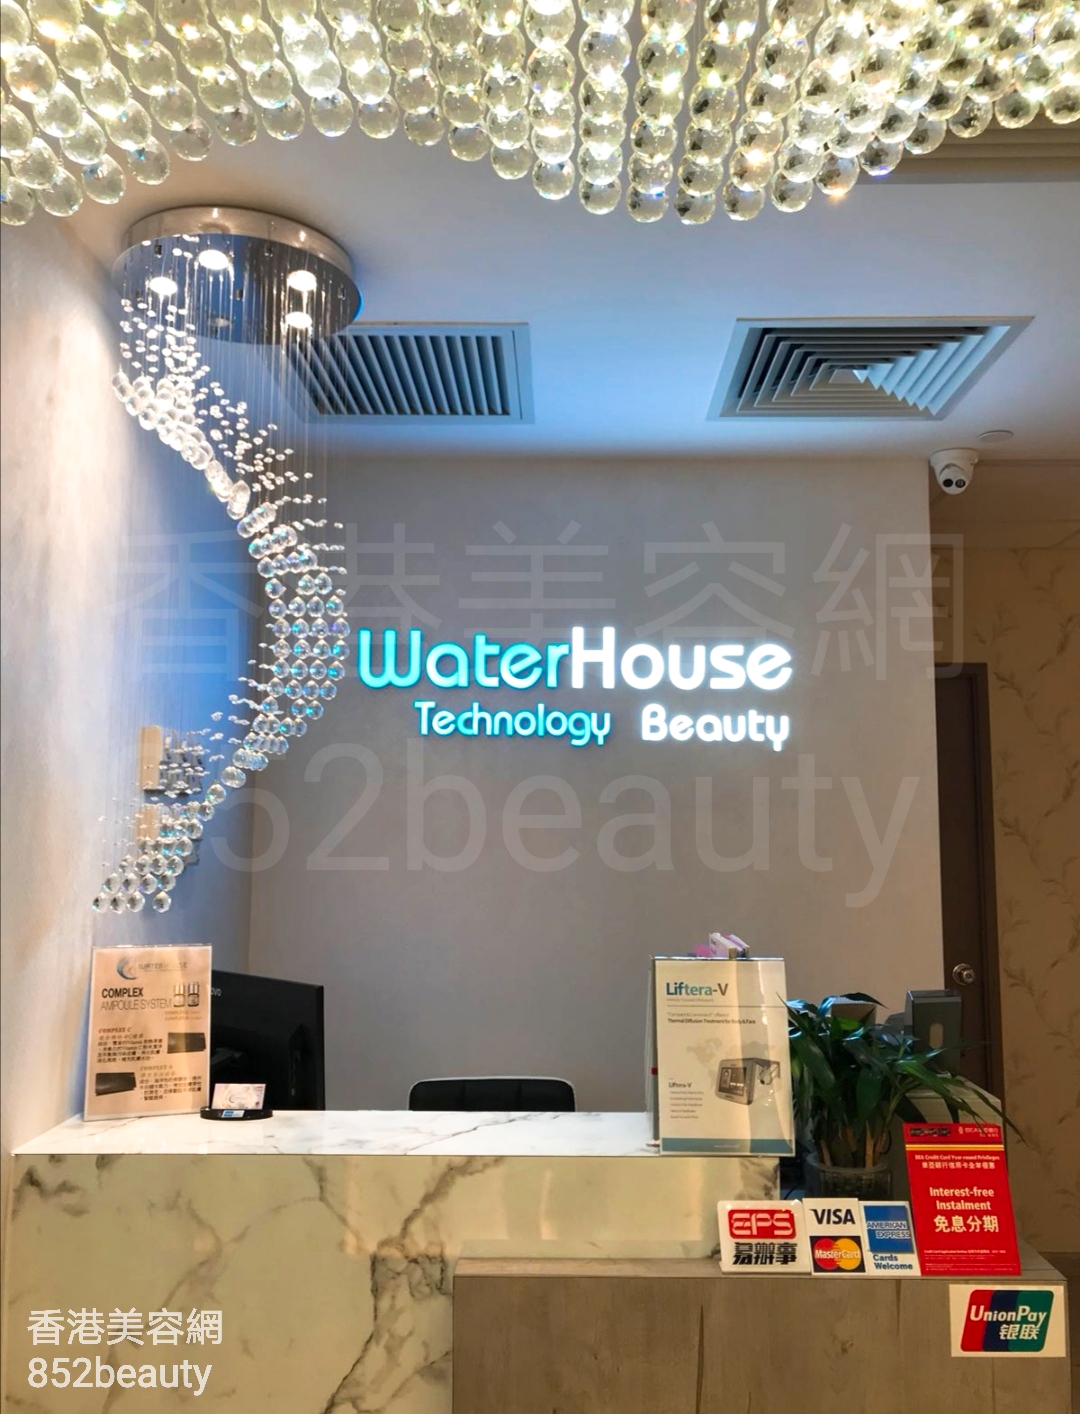 香港美容網 Hong Kong Beauty Salon 美容院 / 美容師: WATERHOUSE (荃灣分店)